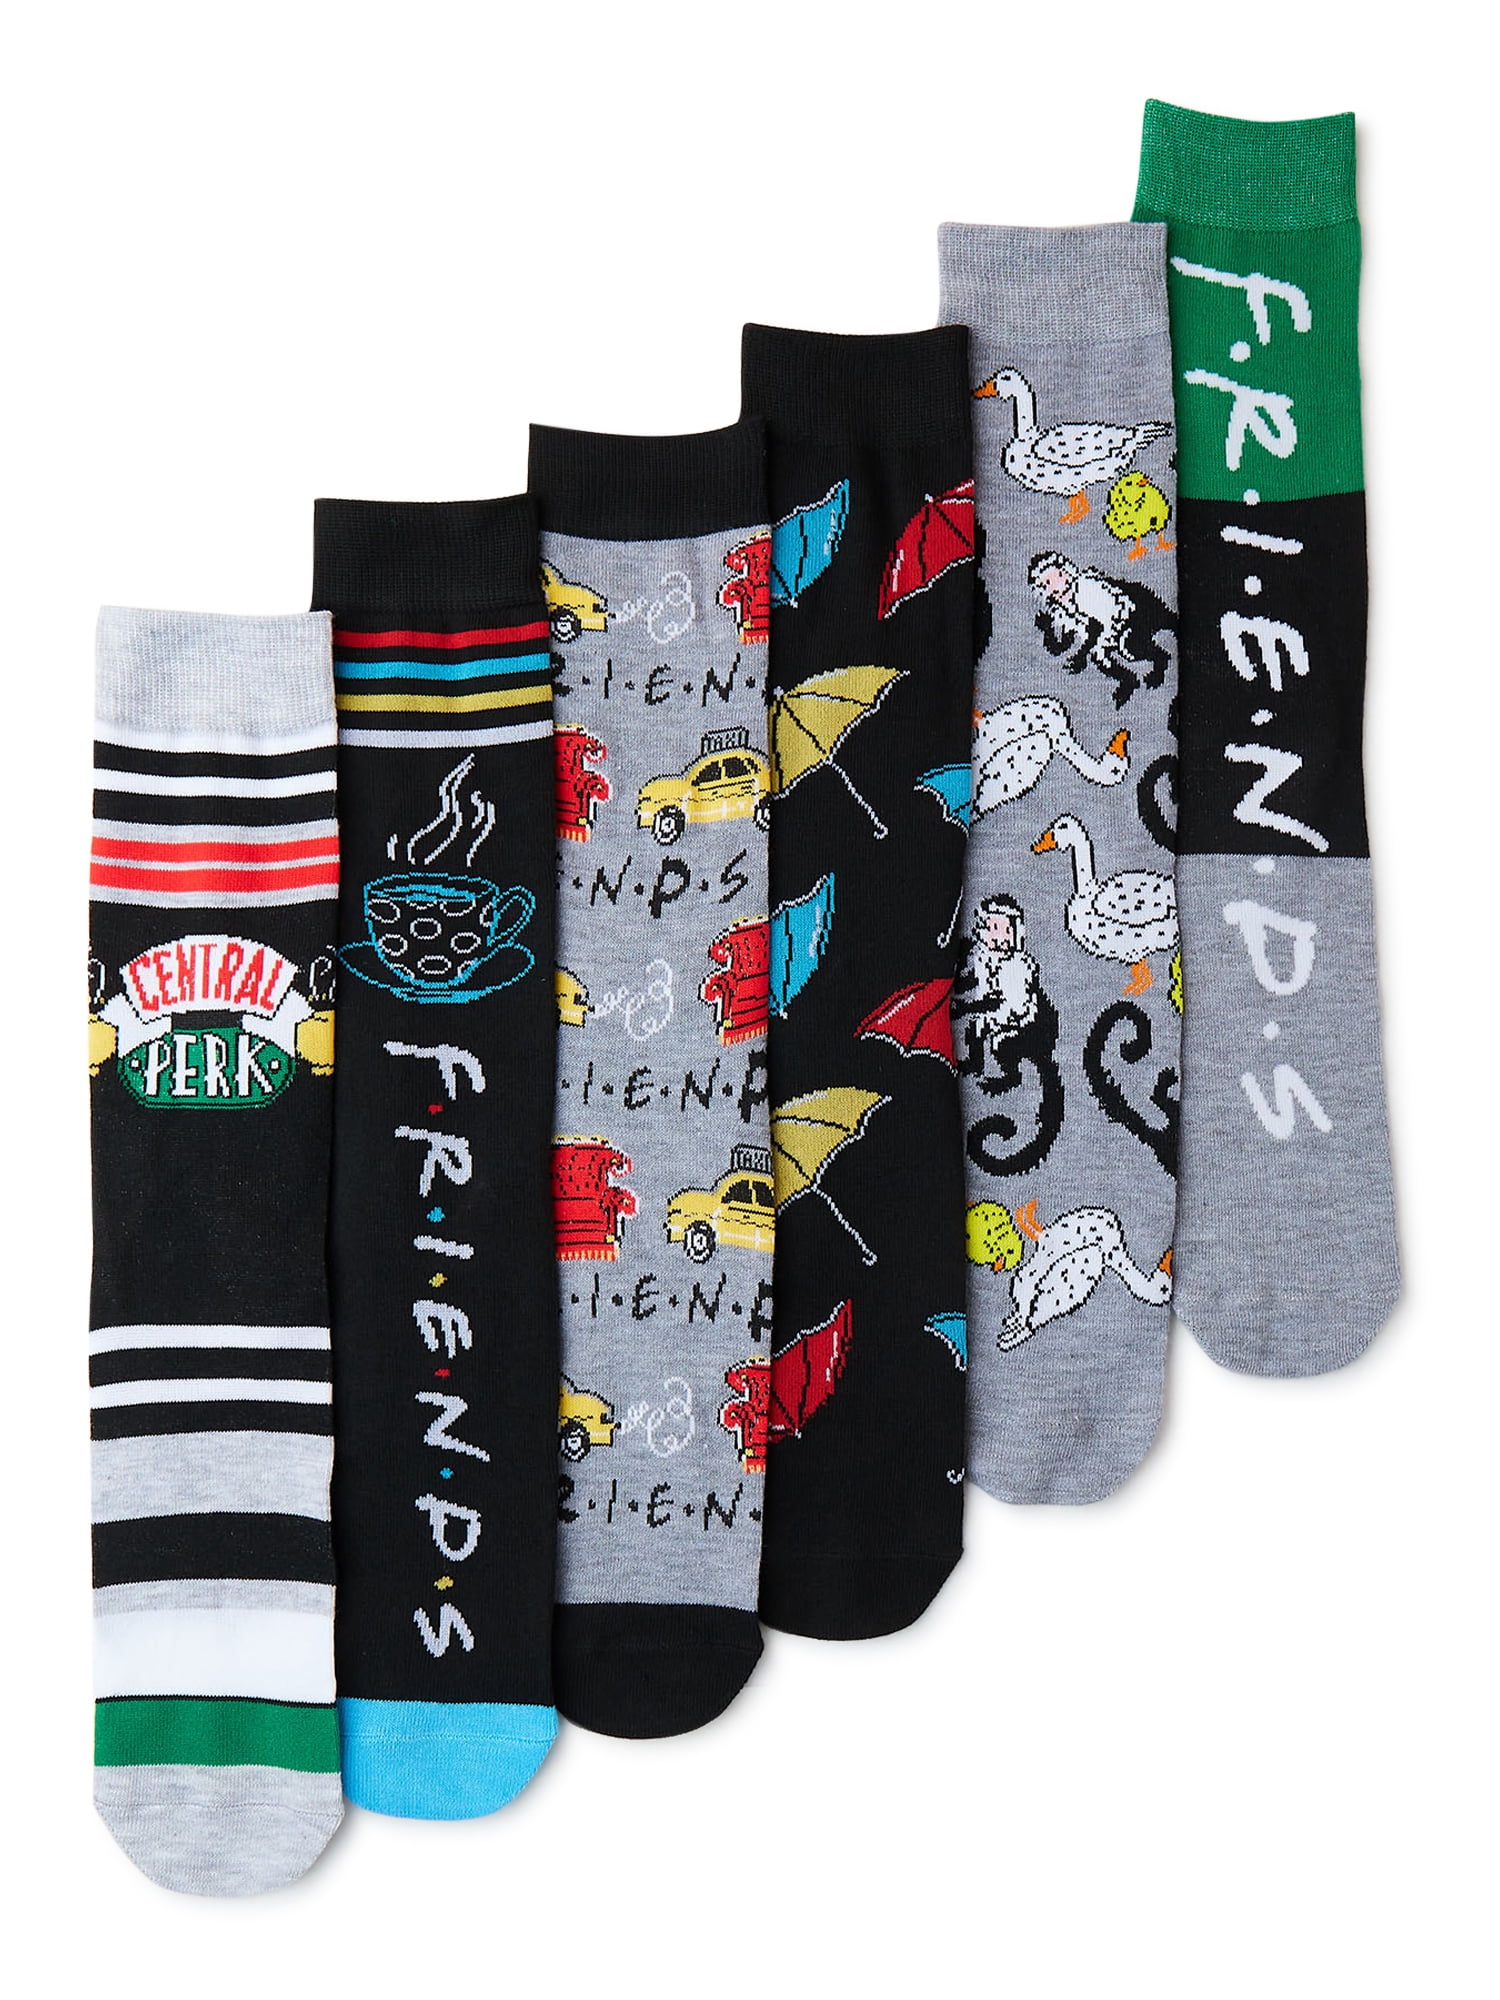 Friends Men's Socks, 6-Pack